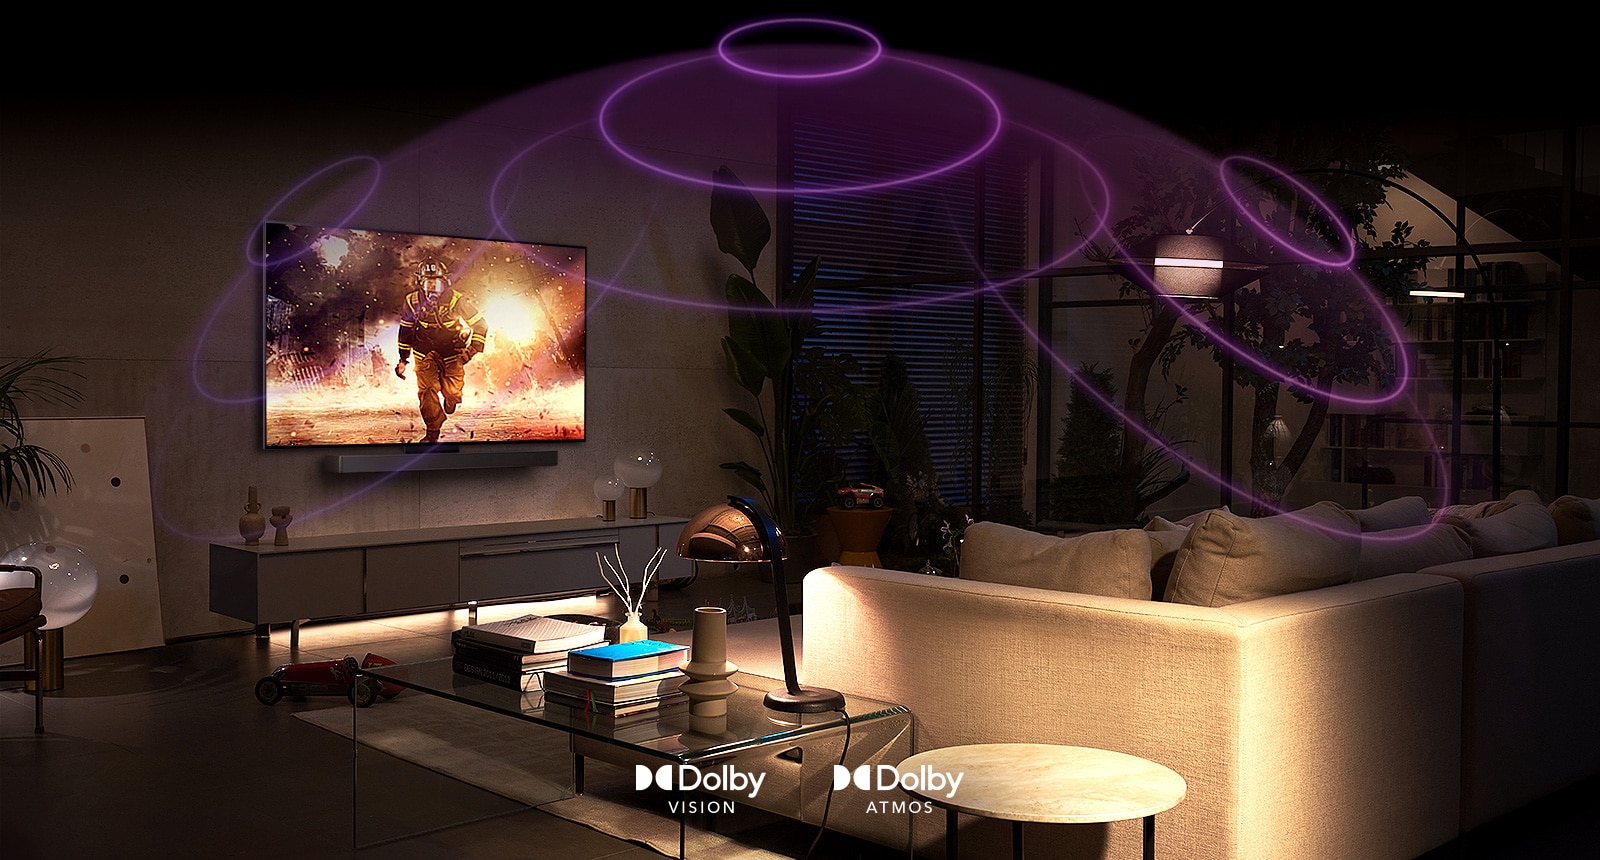 Immagine di un TV OLED LG in una stanza in cui viene riprodotto un film d'azione.  Le onde sonore creano una cupola tra il divano e la TV, illustrando contenuti audio spaziali e coinvolgenti.